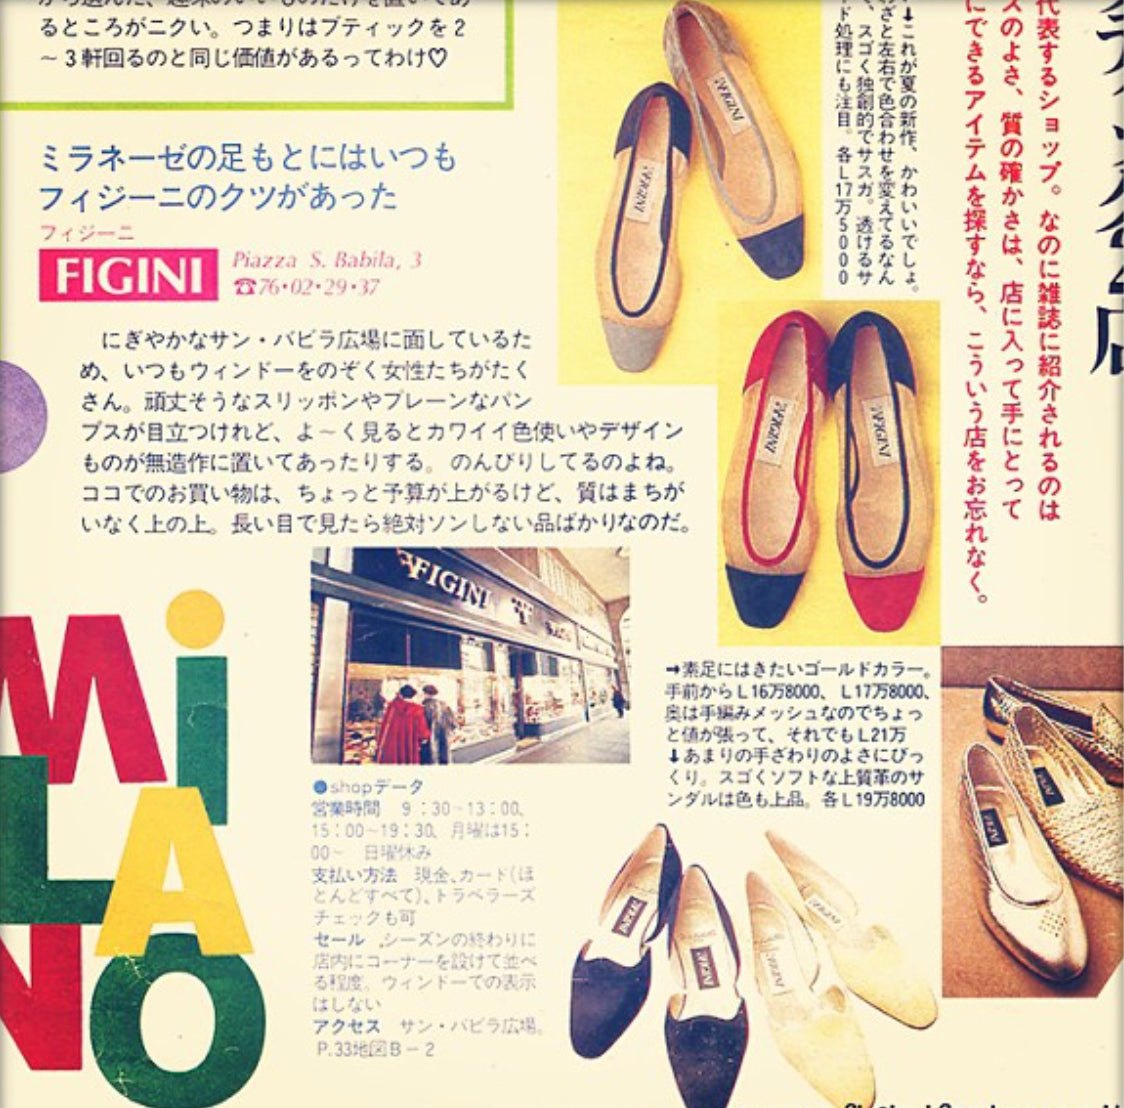 articolo giapponese che parla del brand di calzature Fratelli Figini Milano